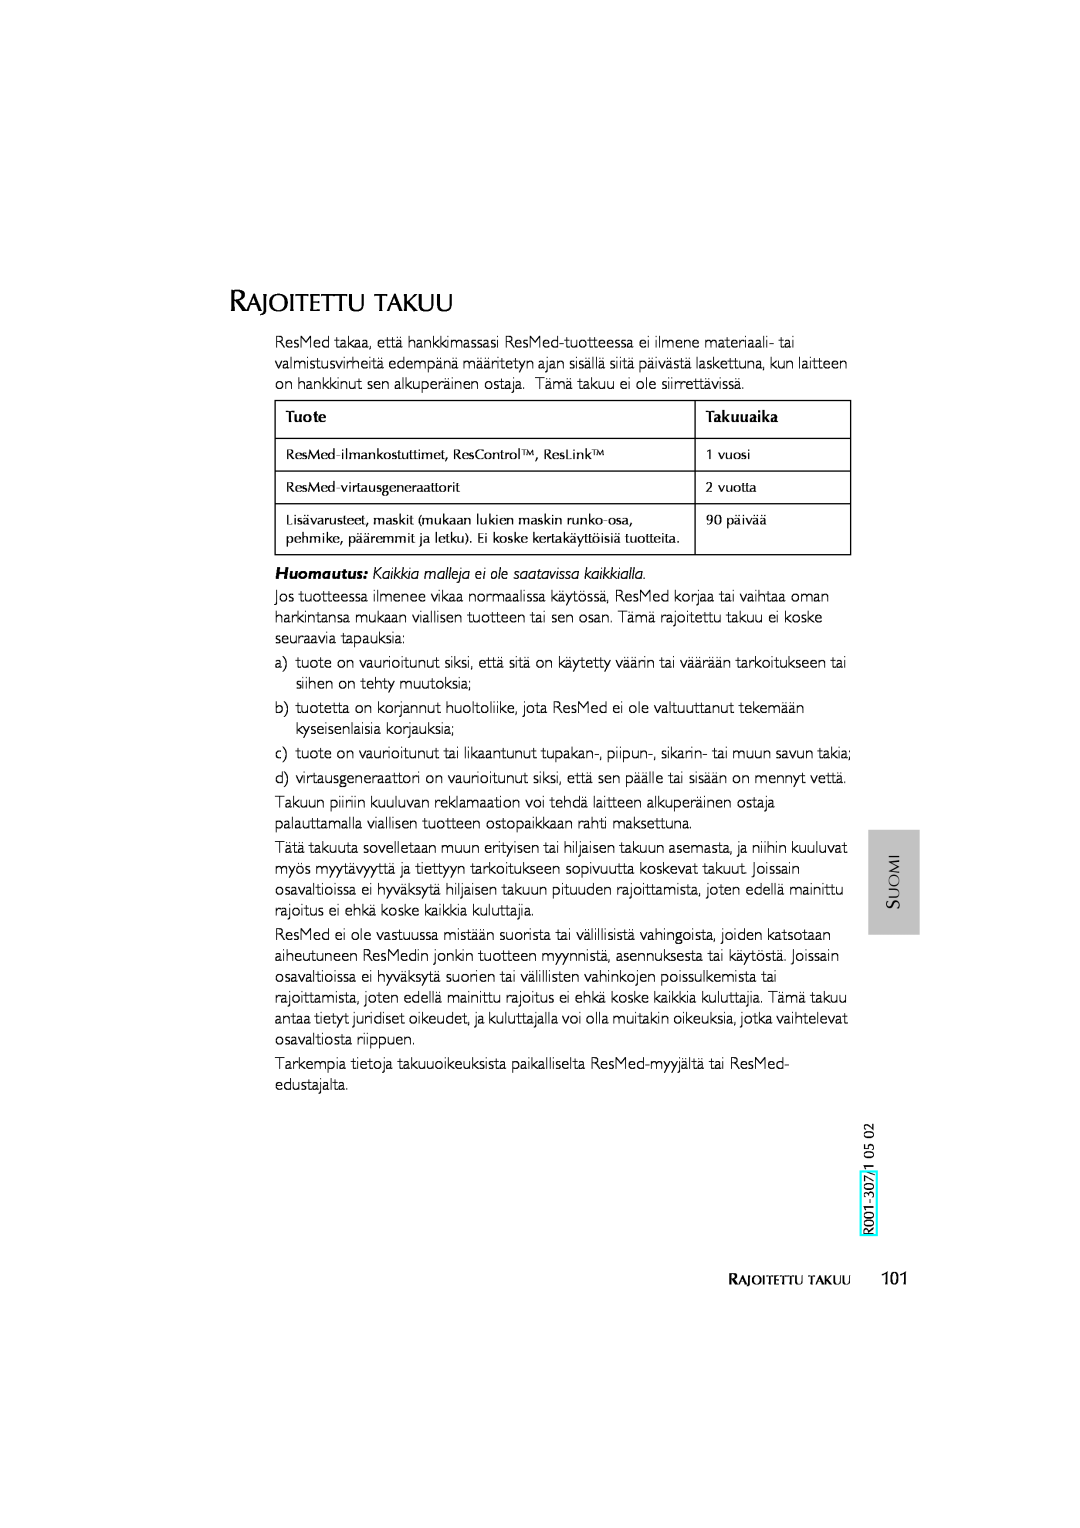 ResMed Humidifier user manual Rajoitettu Takuu, Tuote, Takuuaika 